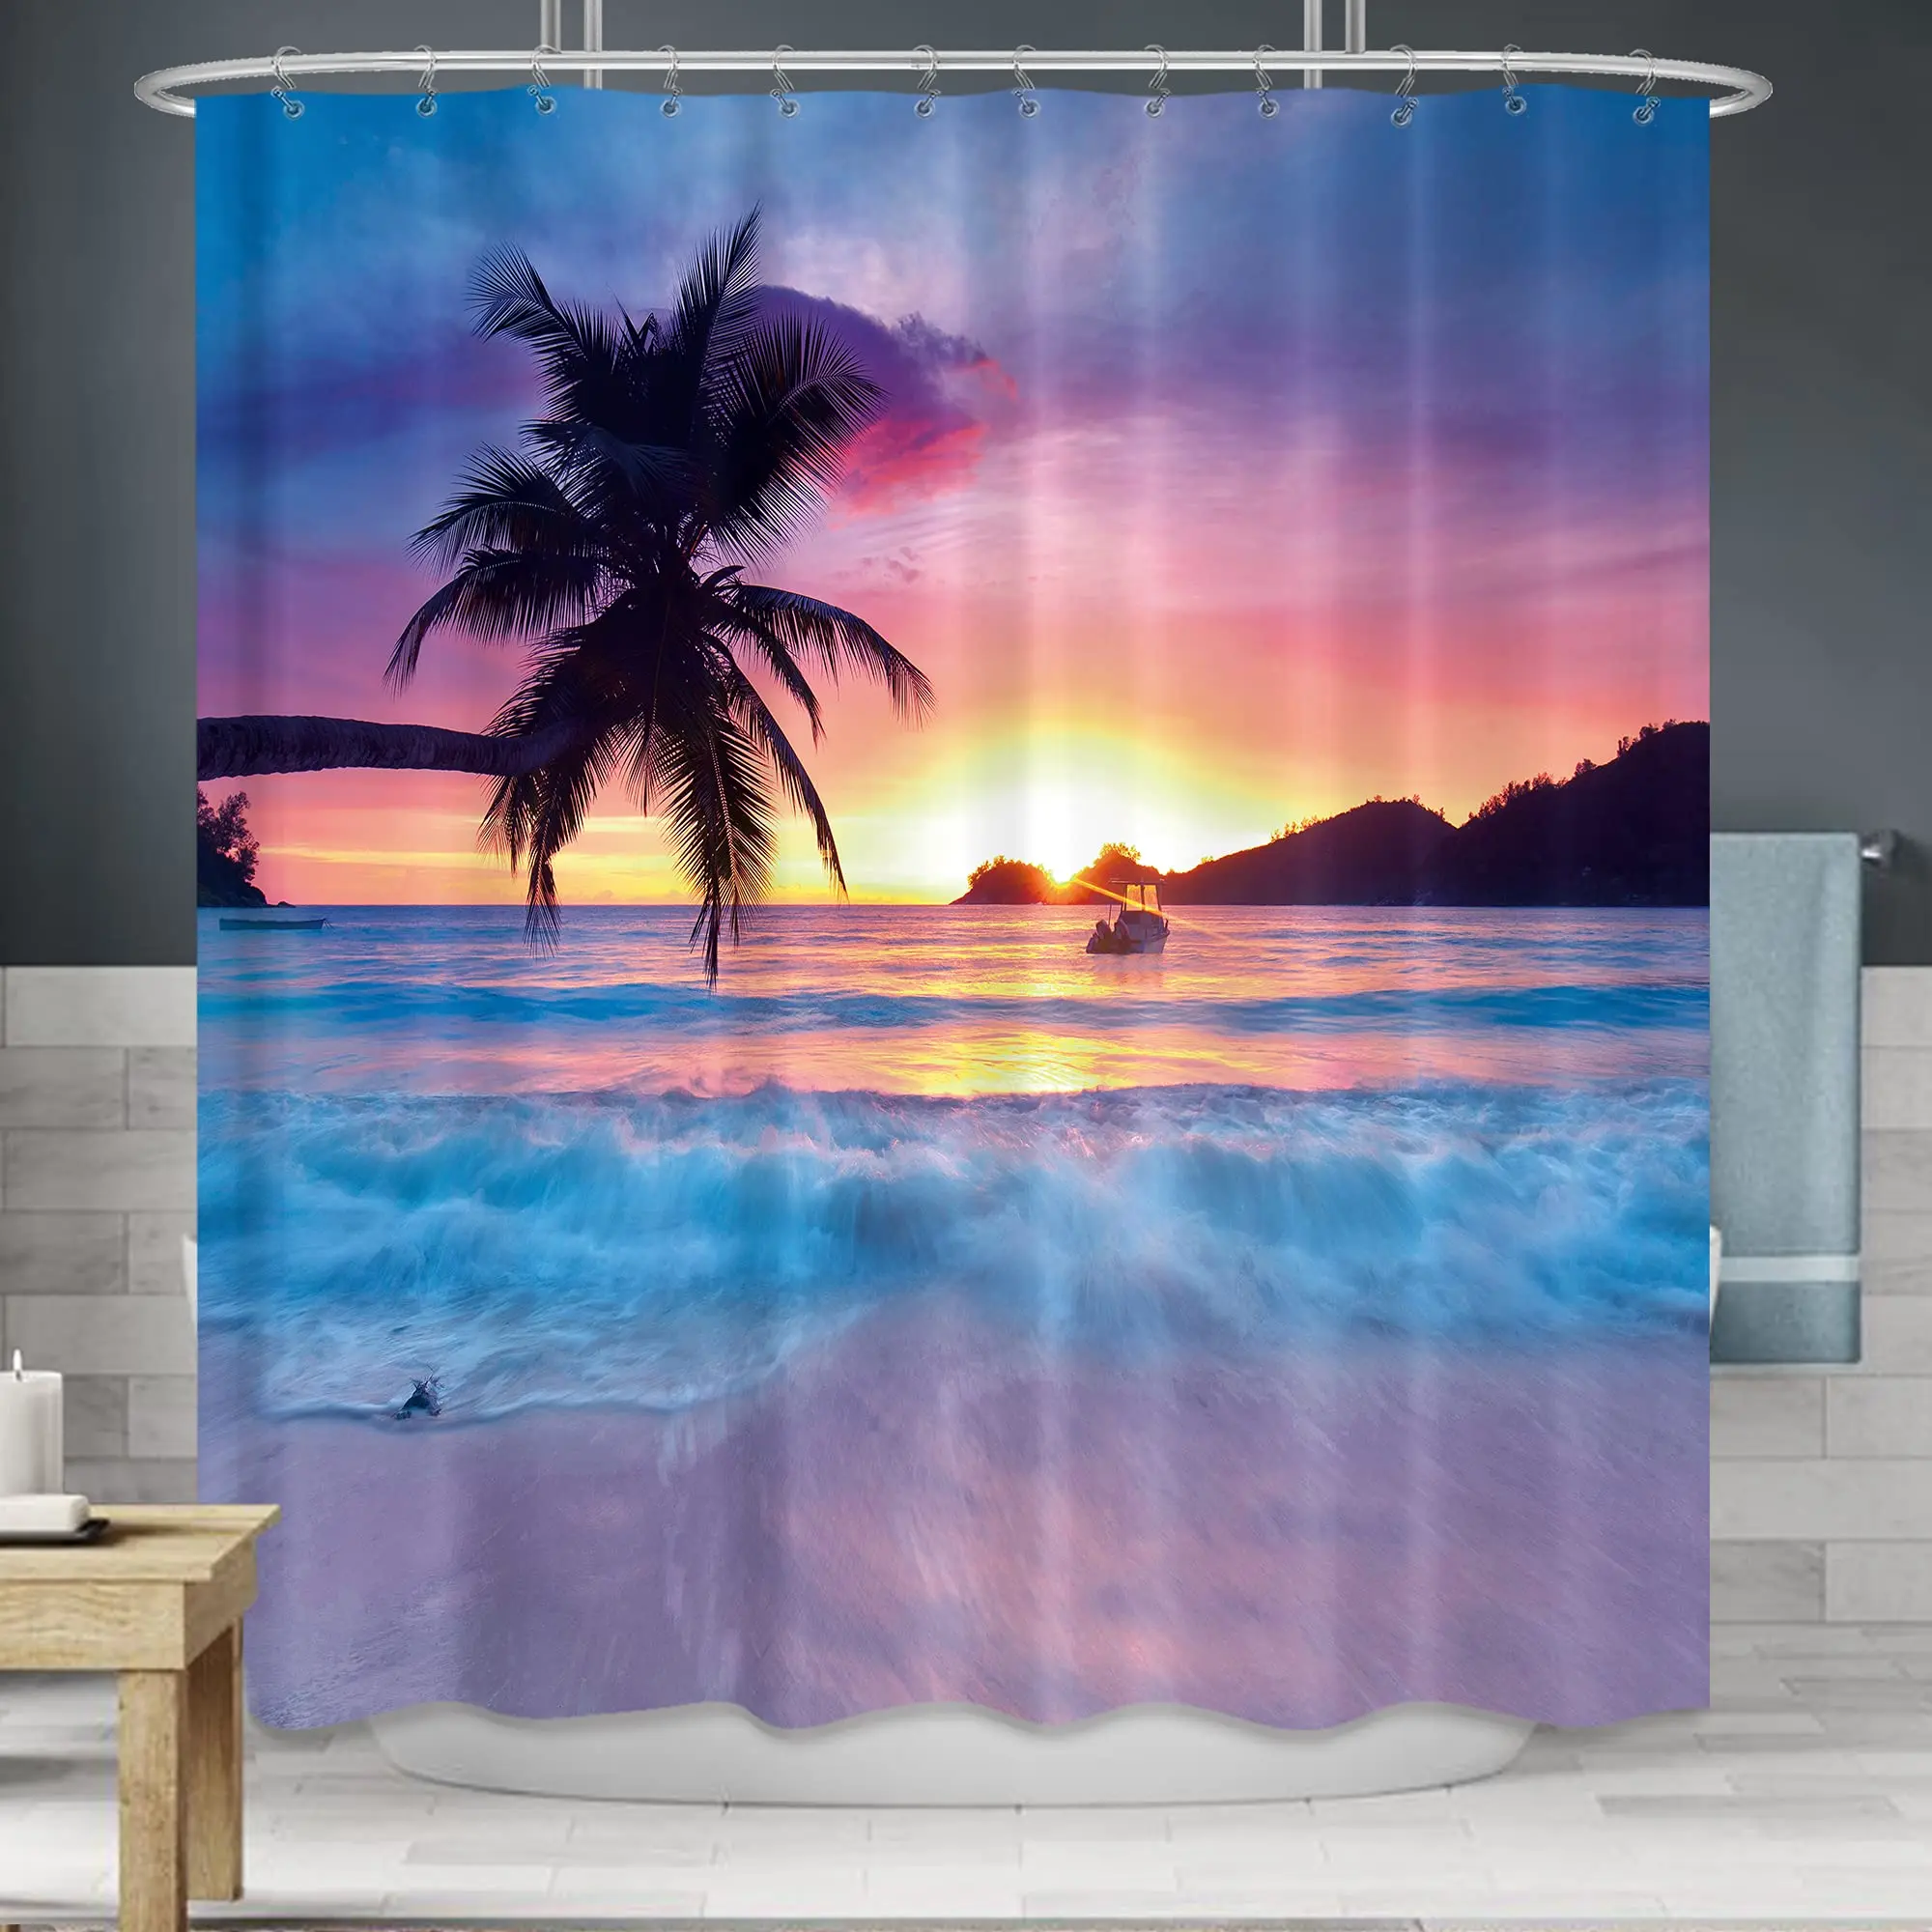 

Beach Shower Curtain Tropical Seaside Plam Trees Shower Curtain Sunset Ocean Waves Shower Curtain Blue Sky Coastal Sun with Hook